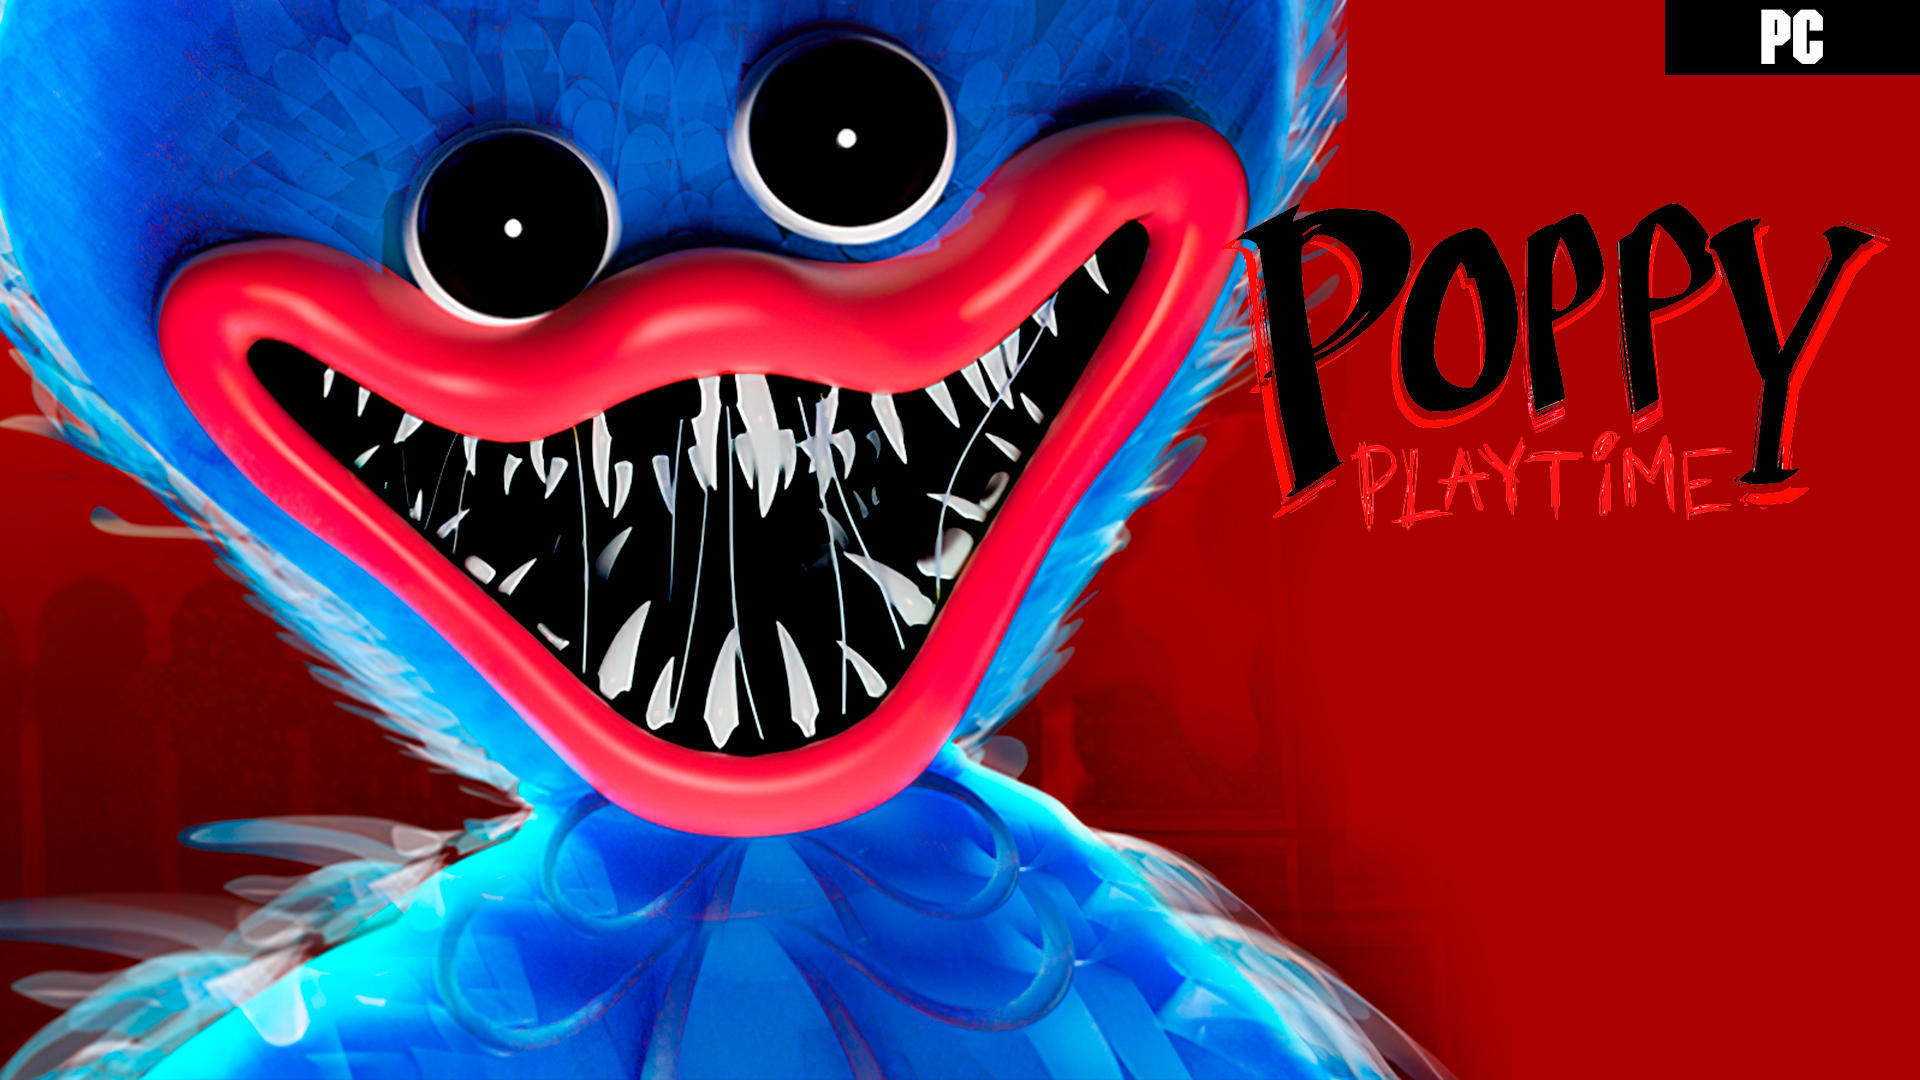 El primer capítulo de Poppy Playtime es gratuito para siempre - Vandal